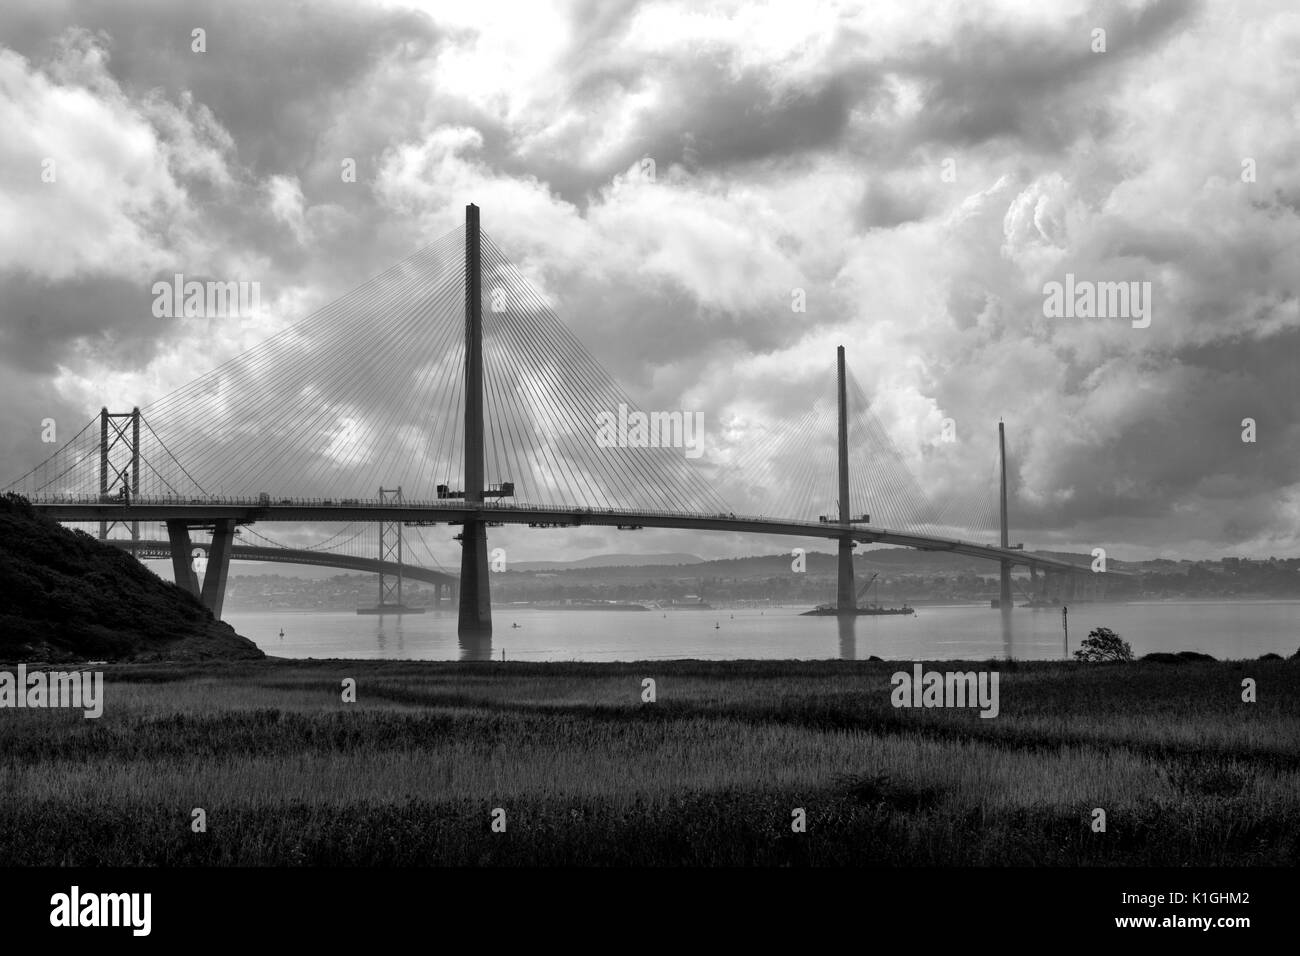 El recién construido Queensferry cruzando el puente de carretera a través del Firth of Forth, con el puente de Forth Road detrás. Foto de stock